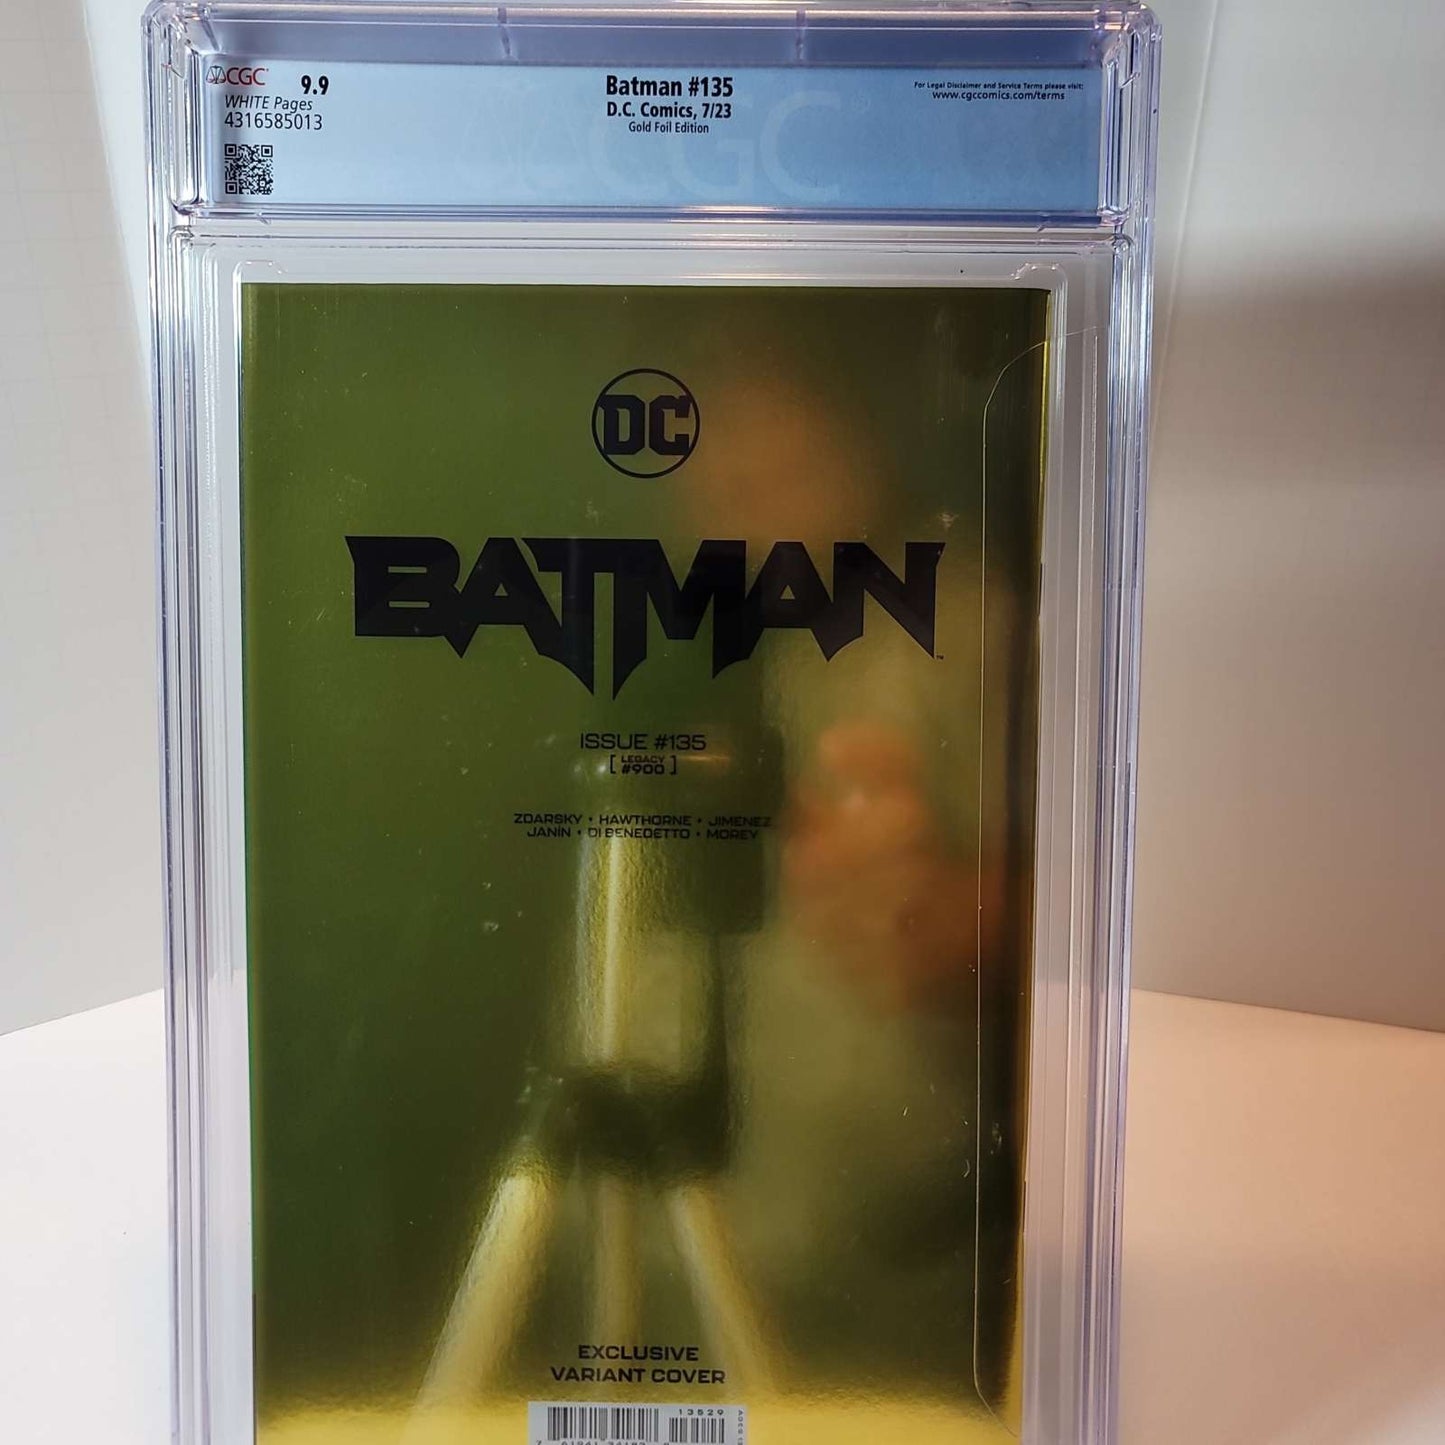 Batman #135 Gold Foil Edition CGC 9.9